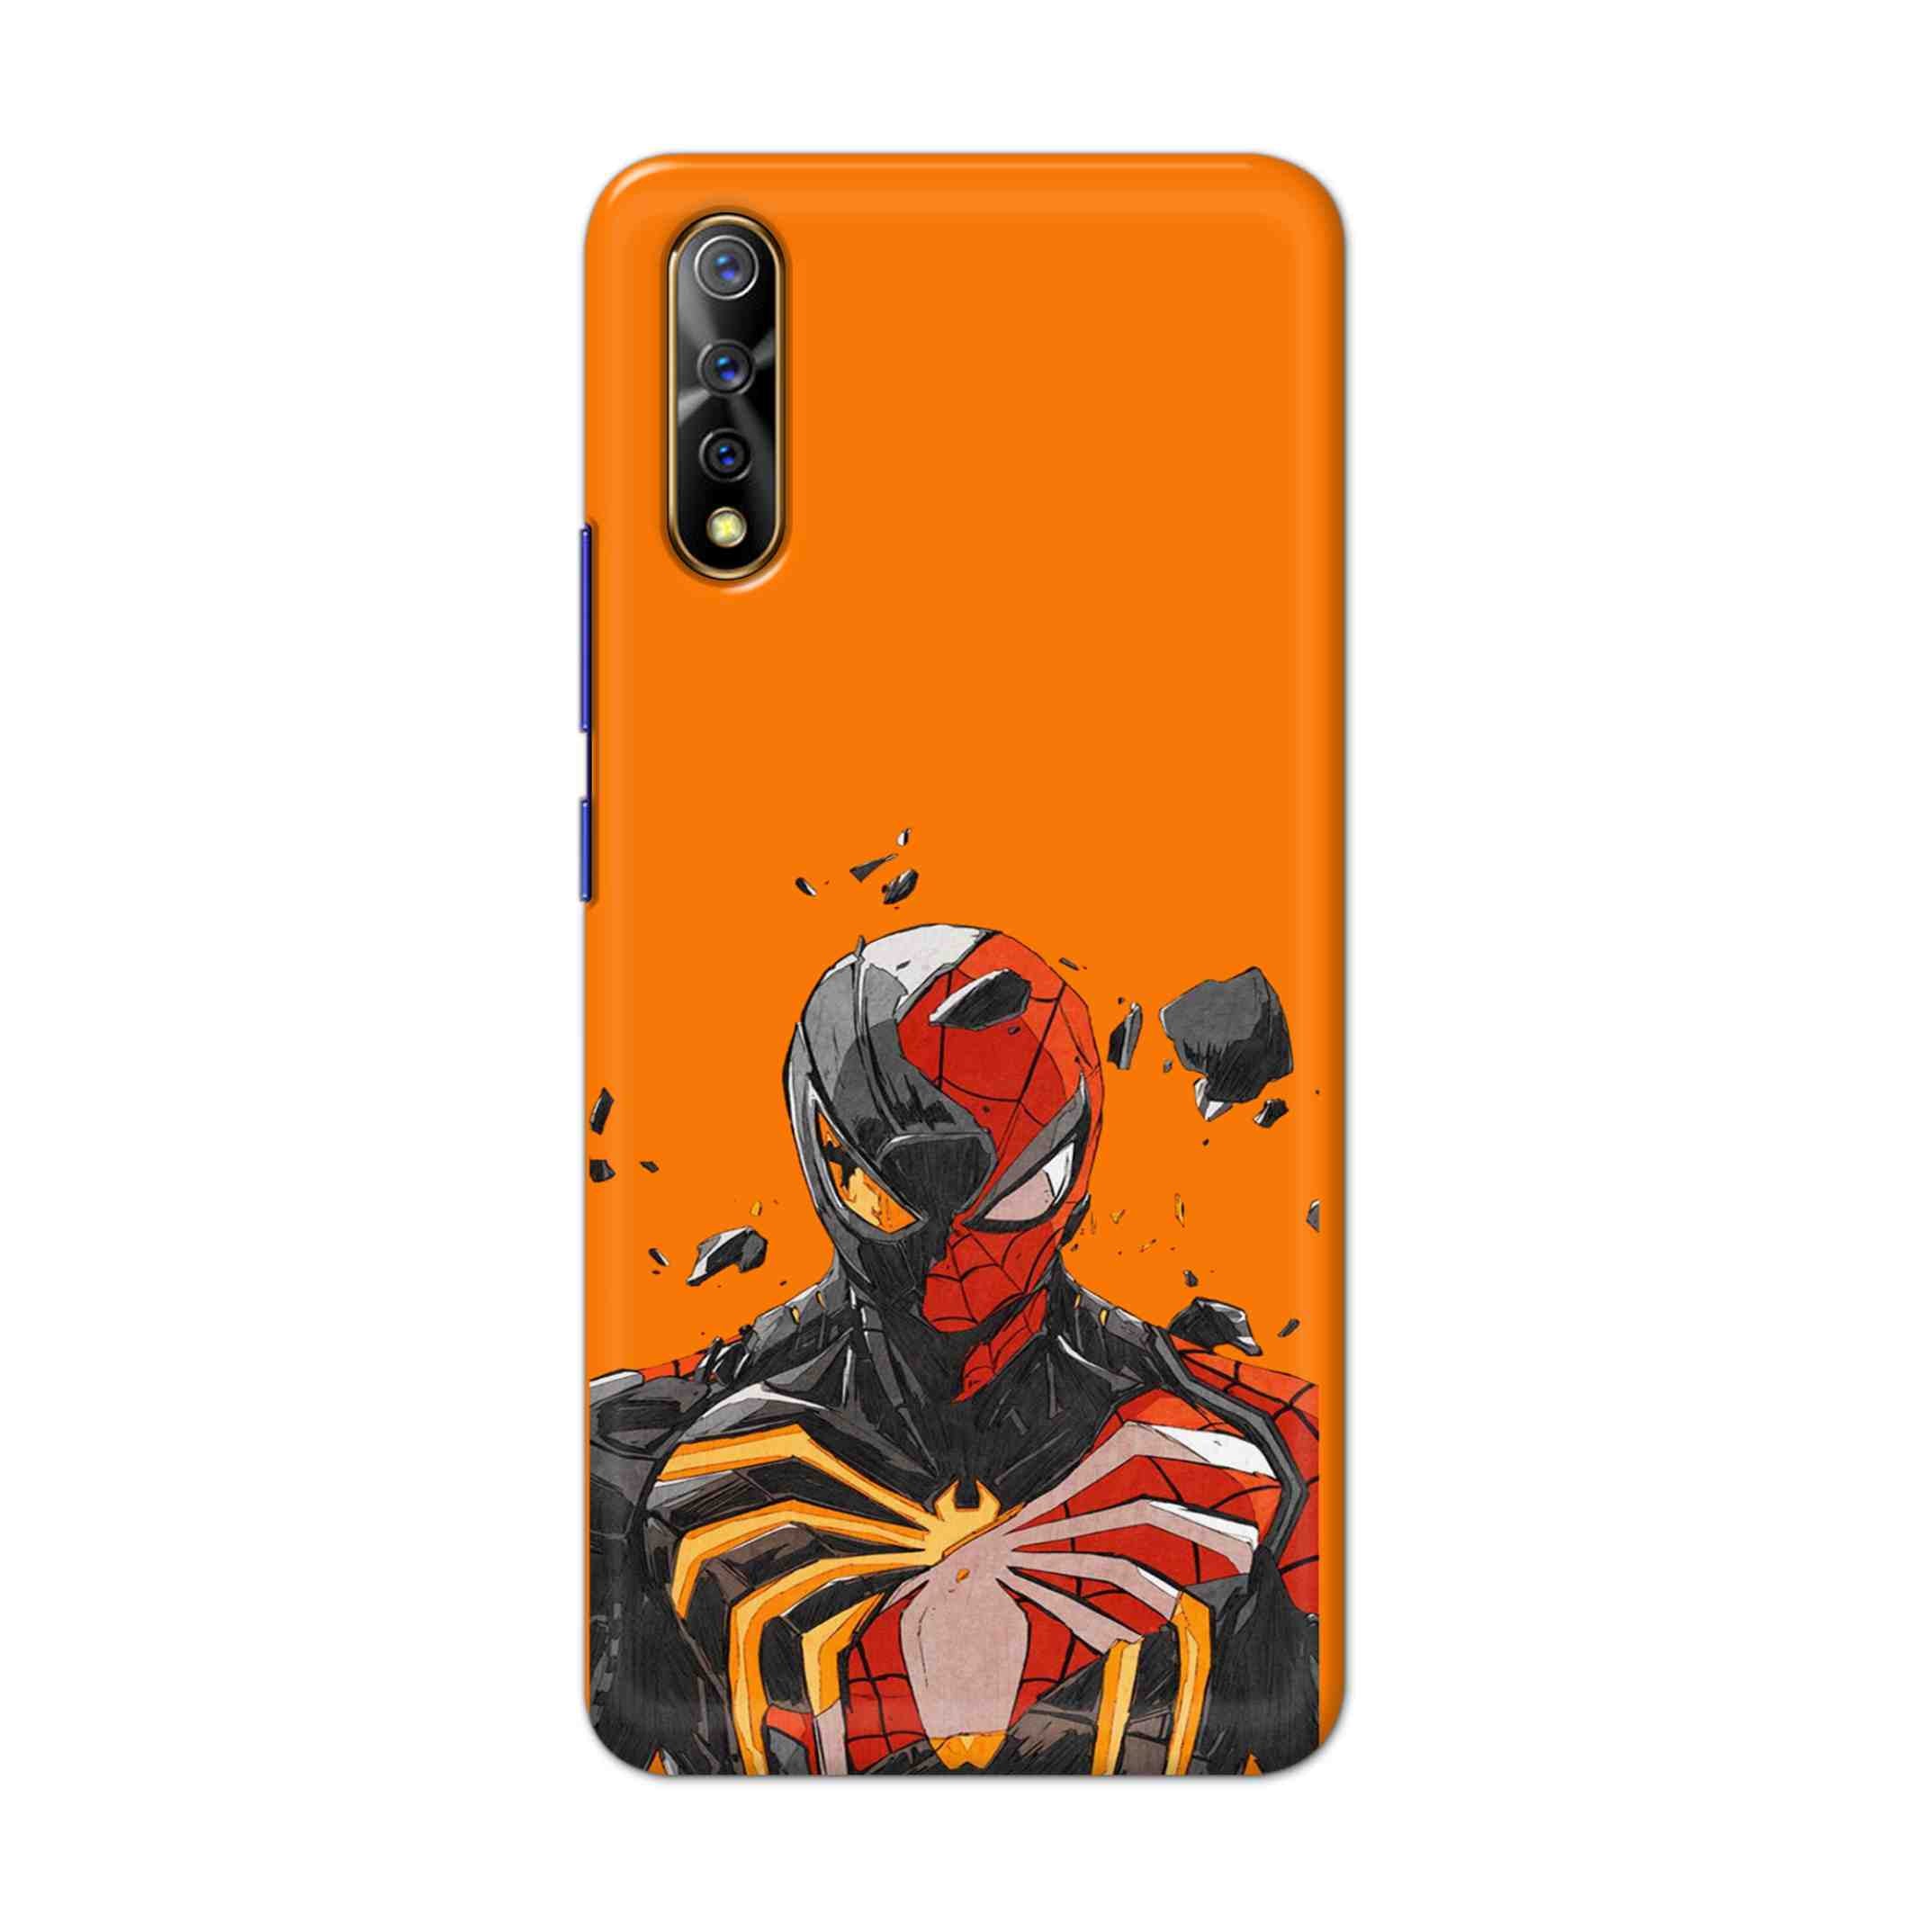 Buy Spiderman With Venom Hard Back Mobile Phone Case Cover For Vivo S1 / Z1x Online